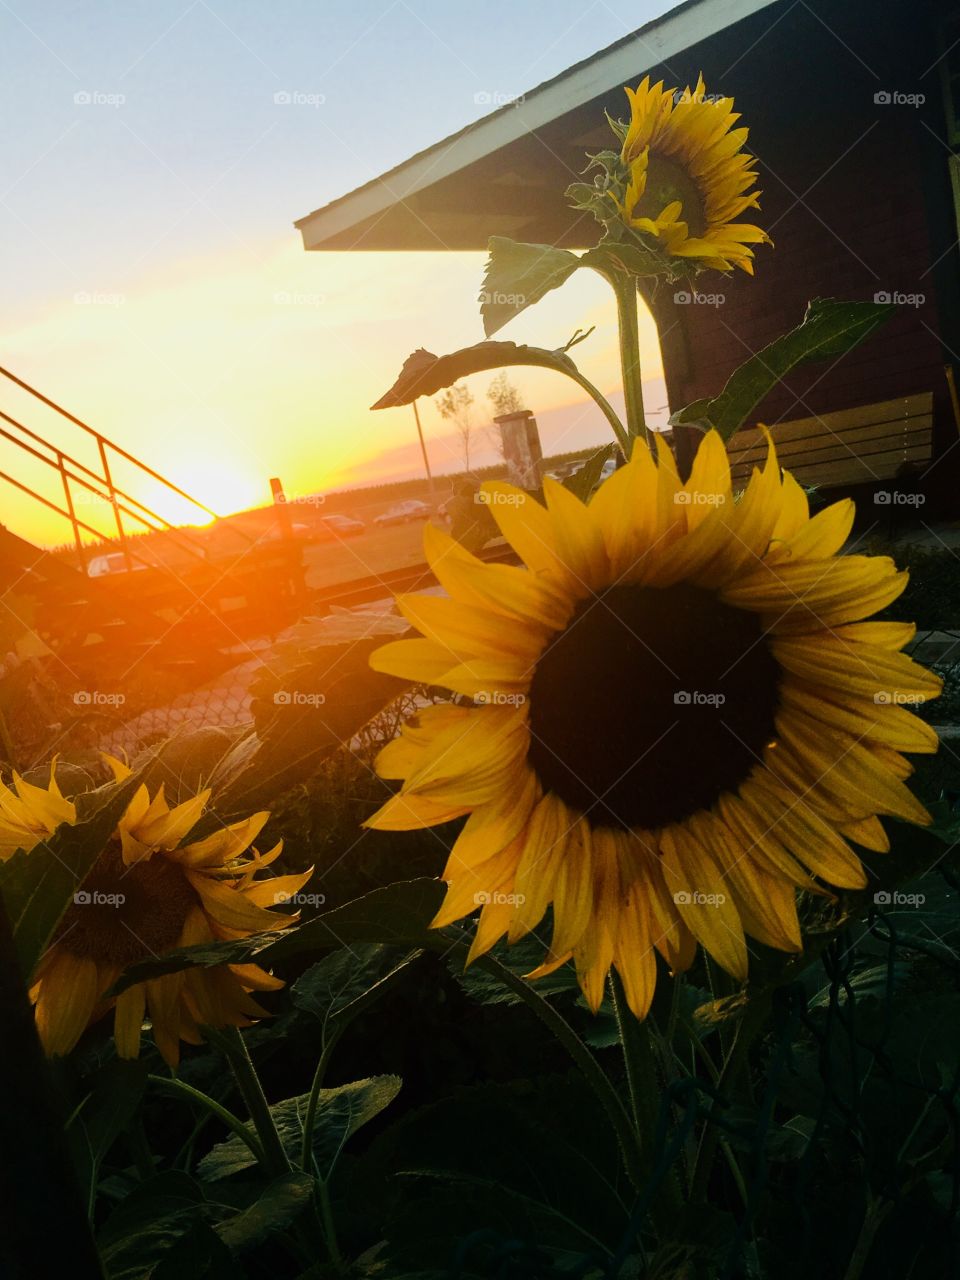 Golden rays on sunflowers